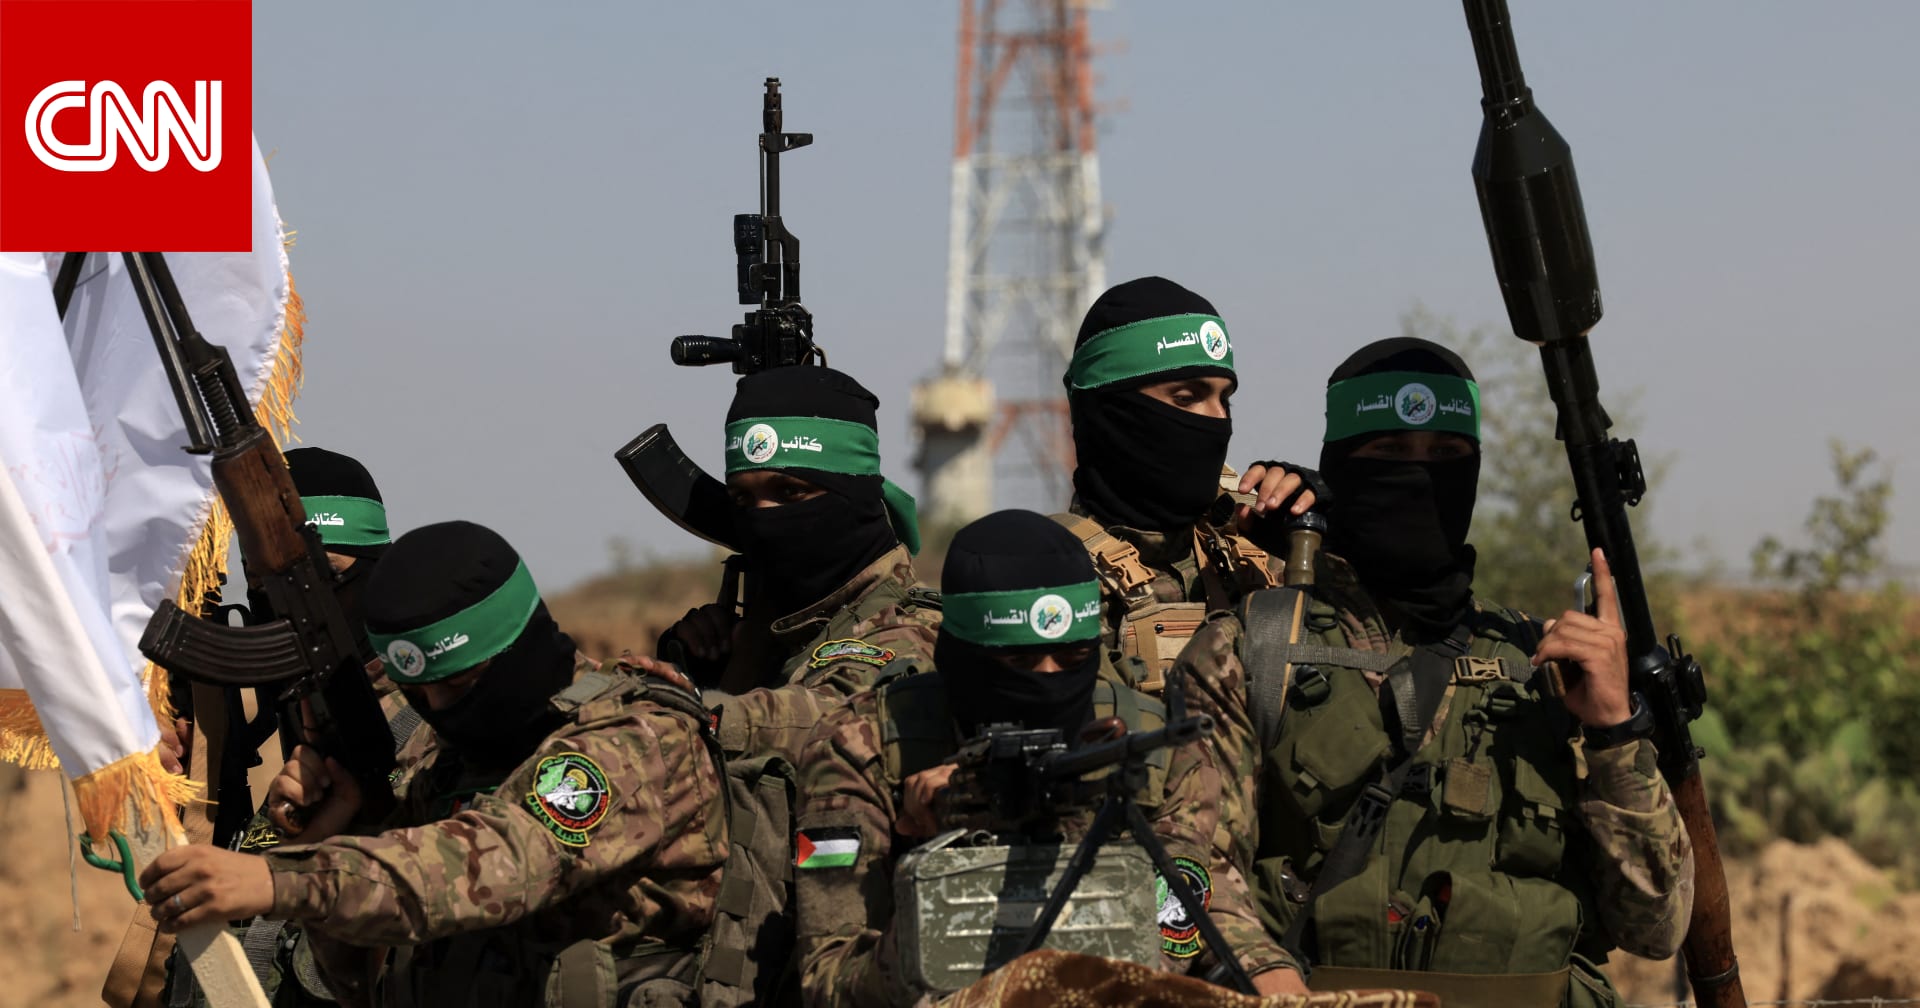 ماذا نعلم عن الرهائن بقبضة حماس بعد عملية "طوفان الأقصى"؟